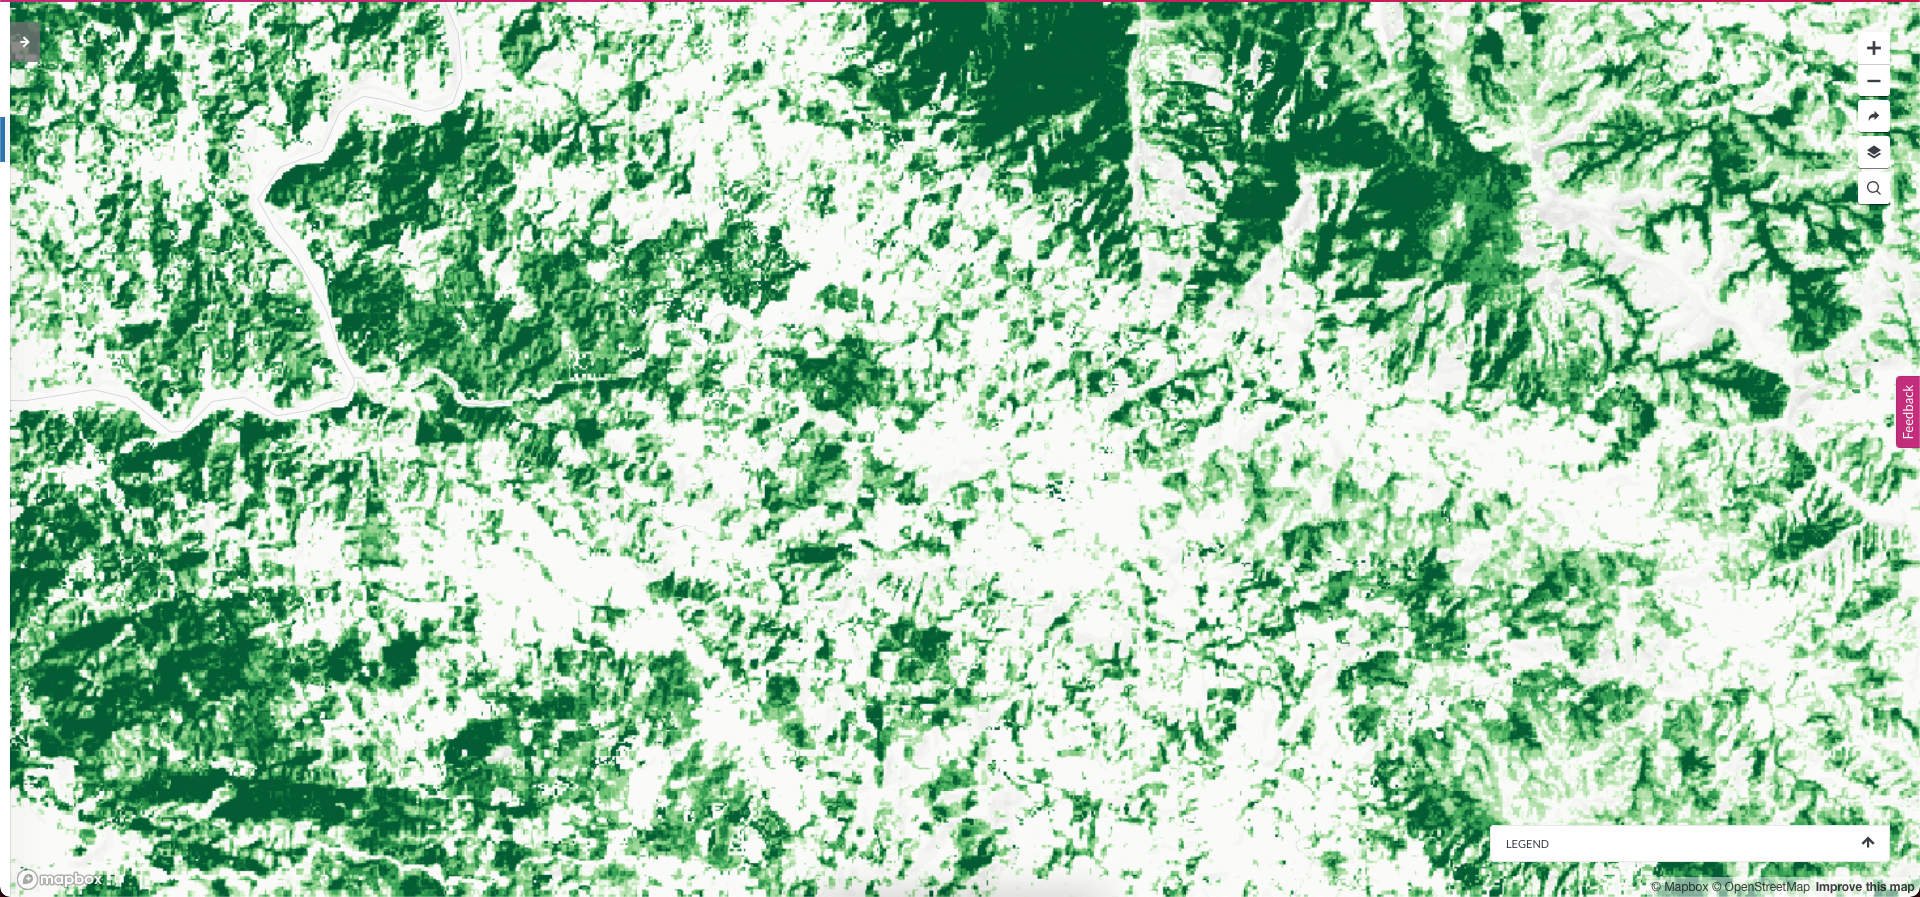 <p>gráficos mostra árvores em paisagens-mosaico no méxico</p>